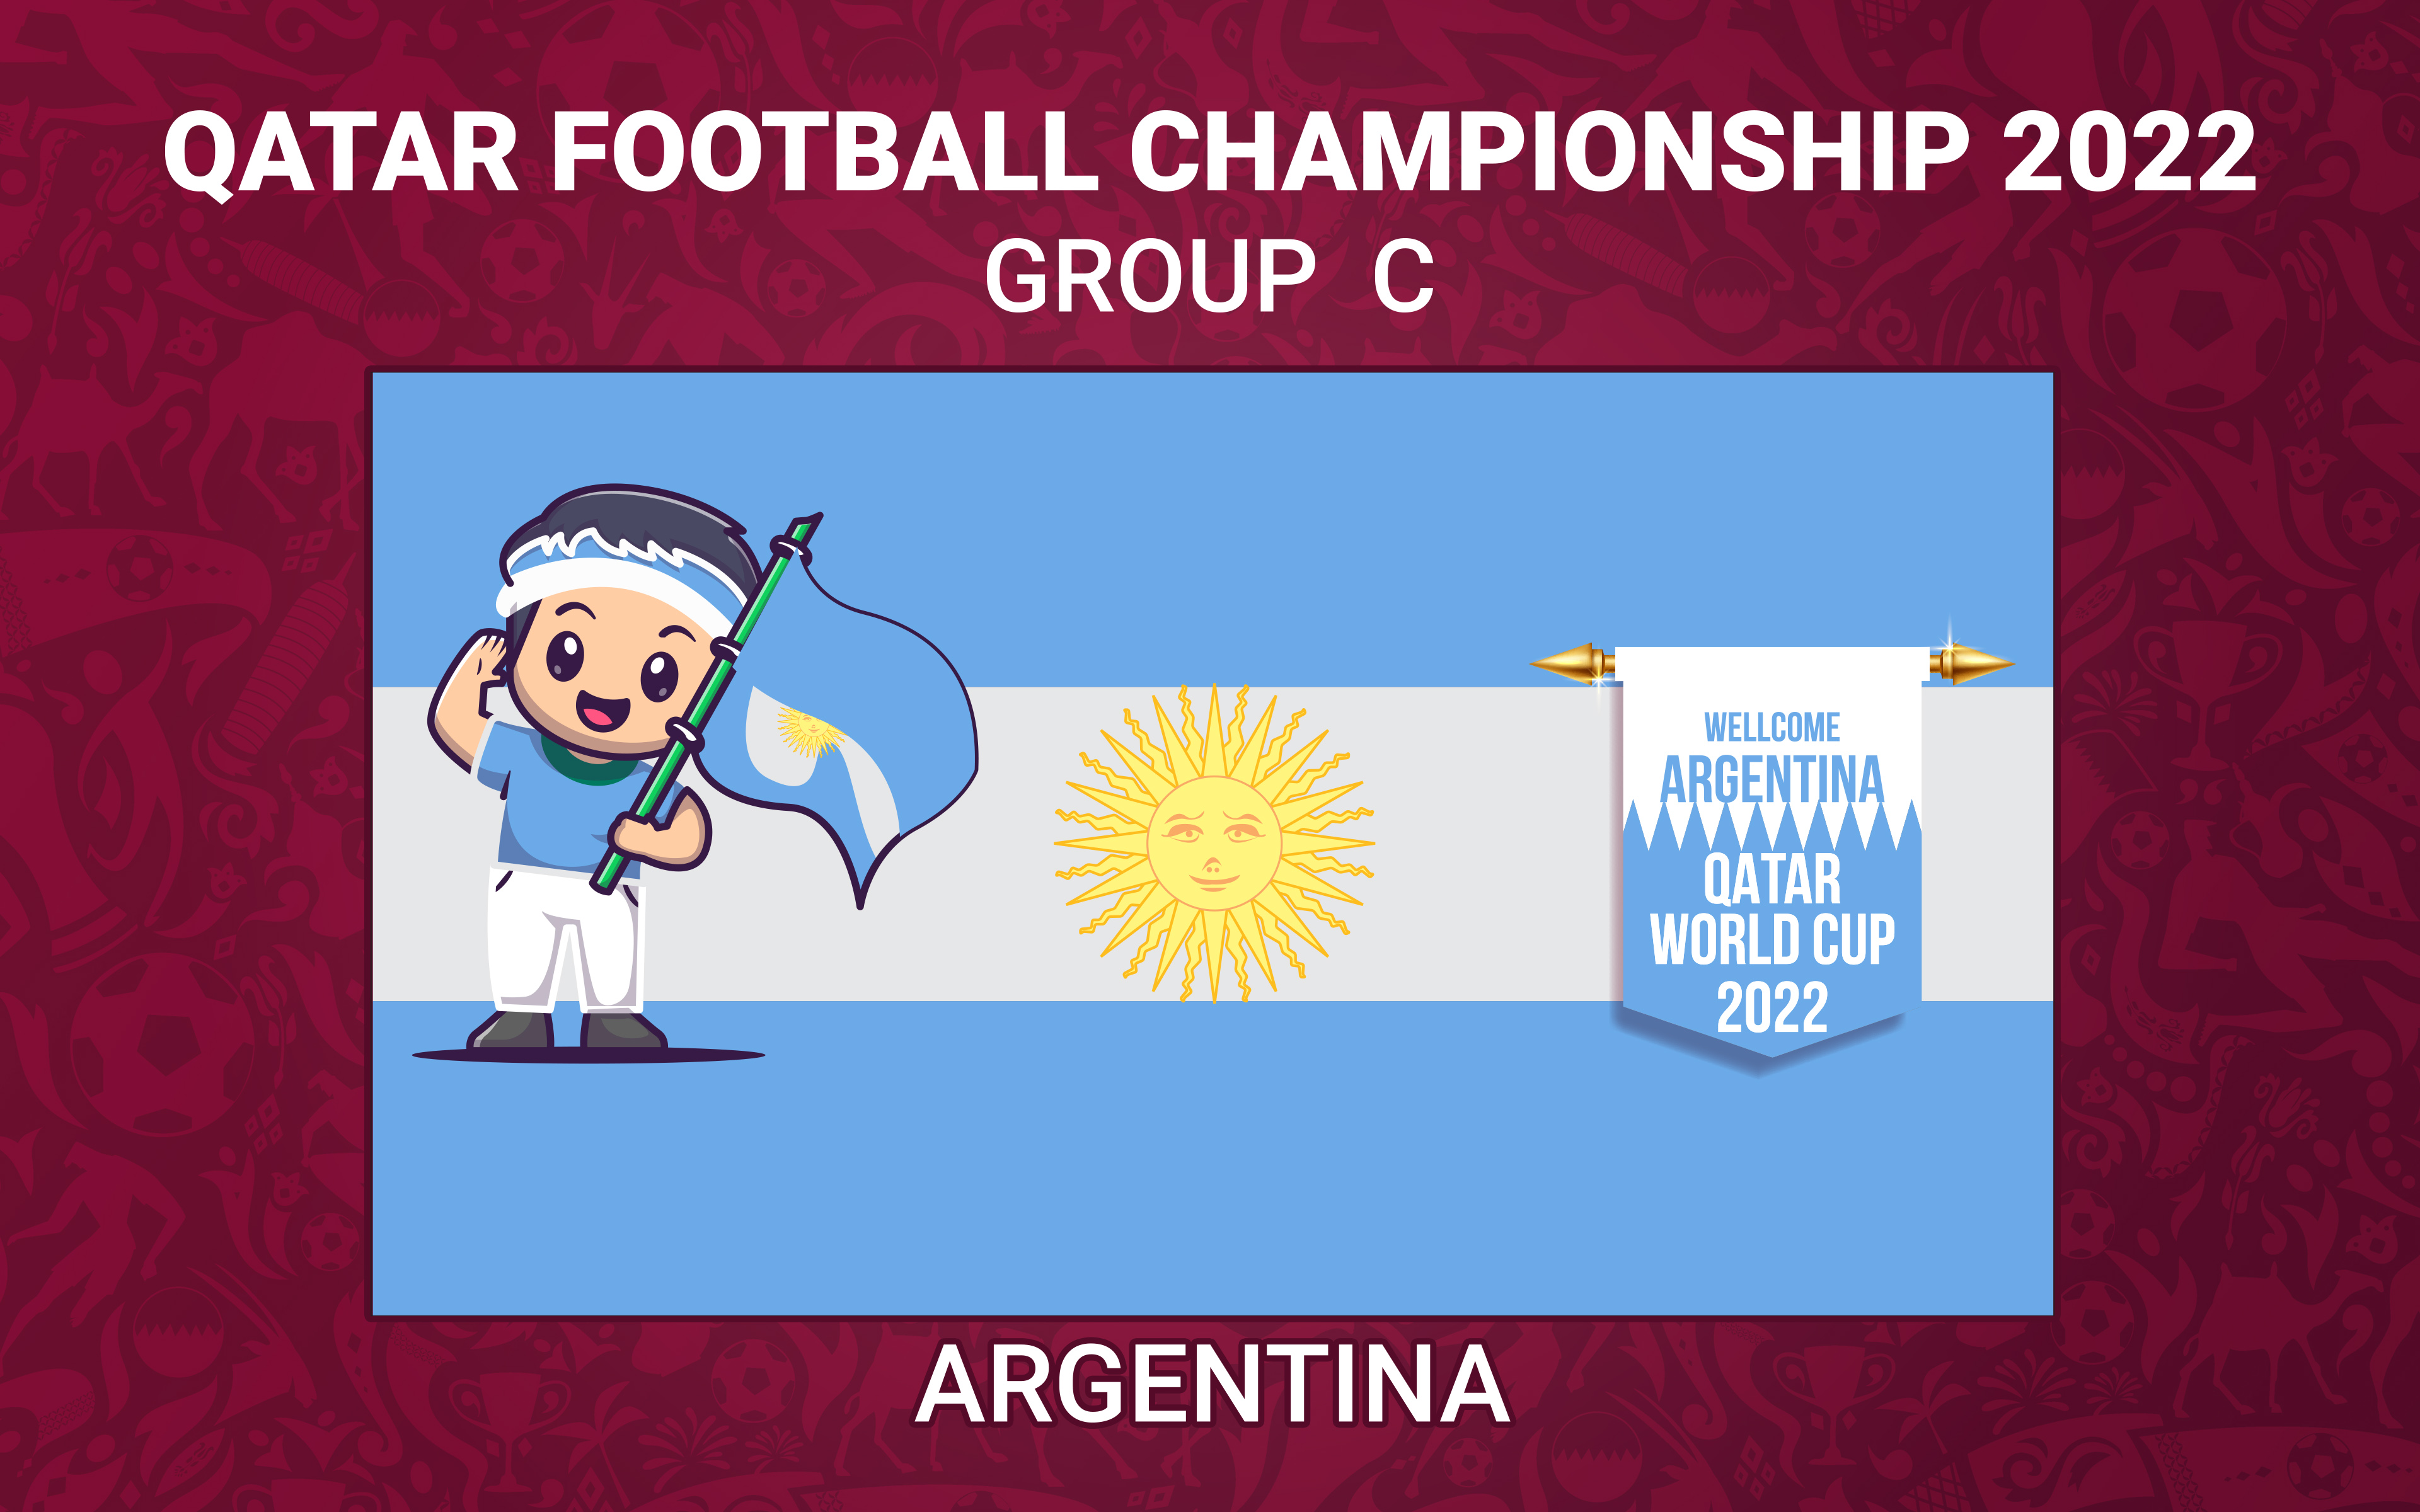 FIFA World Cup Qatar 2022 032 Mistrzostwa Swiata w Pilce Noznej Katar 2022, Grupa C, Argentyna